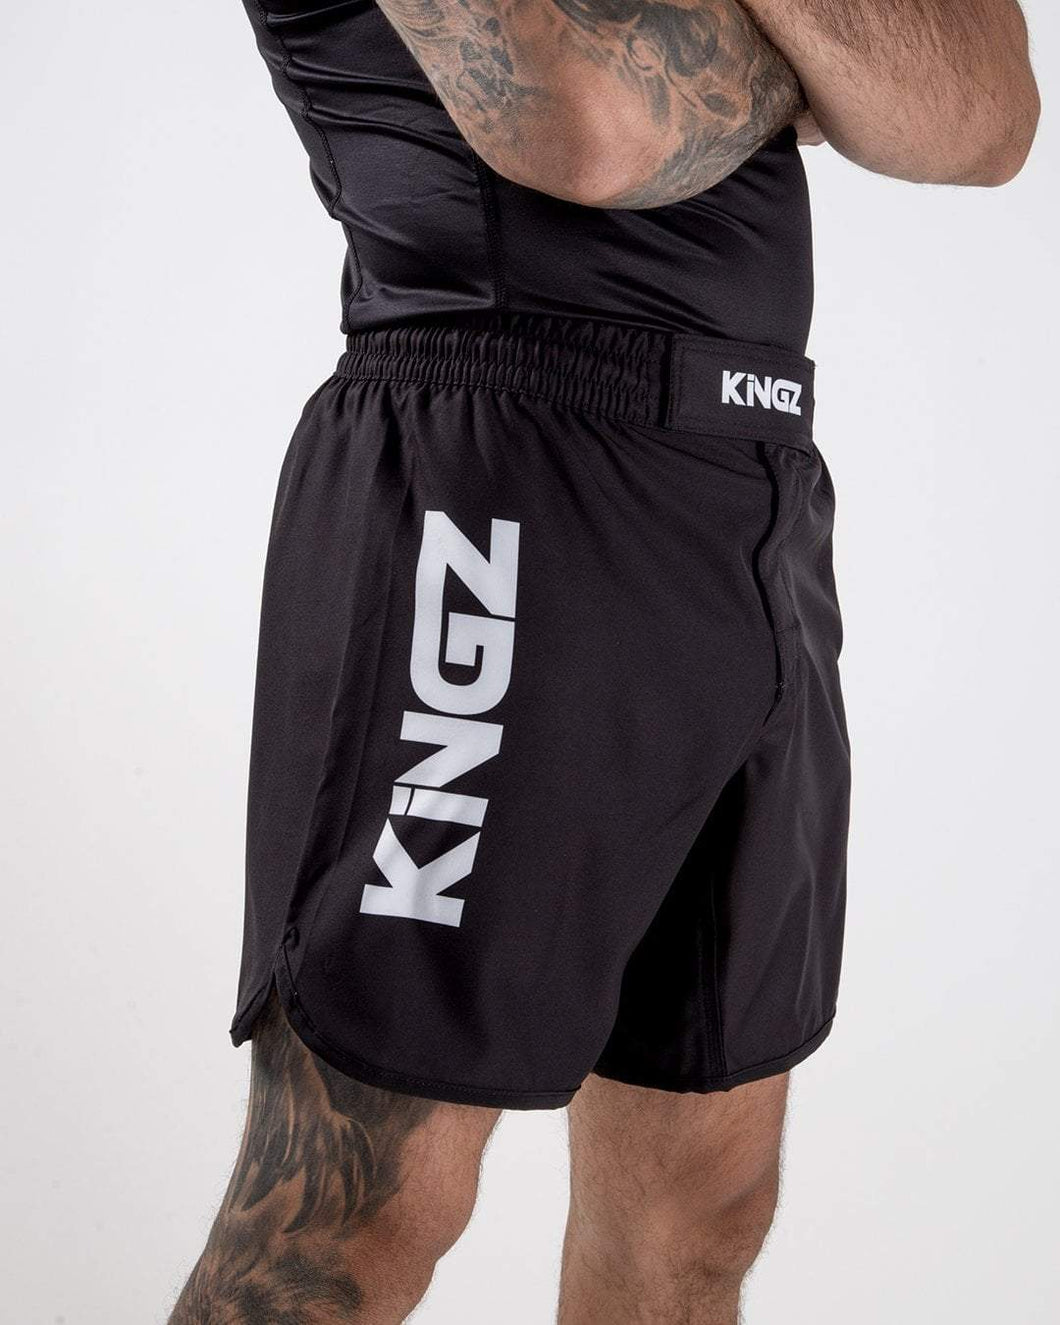 Kingz-Kore-Shorts